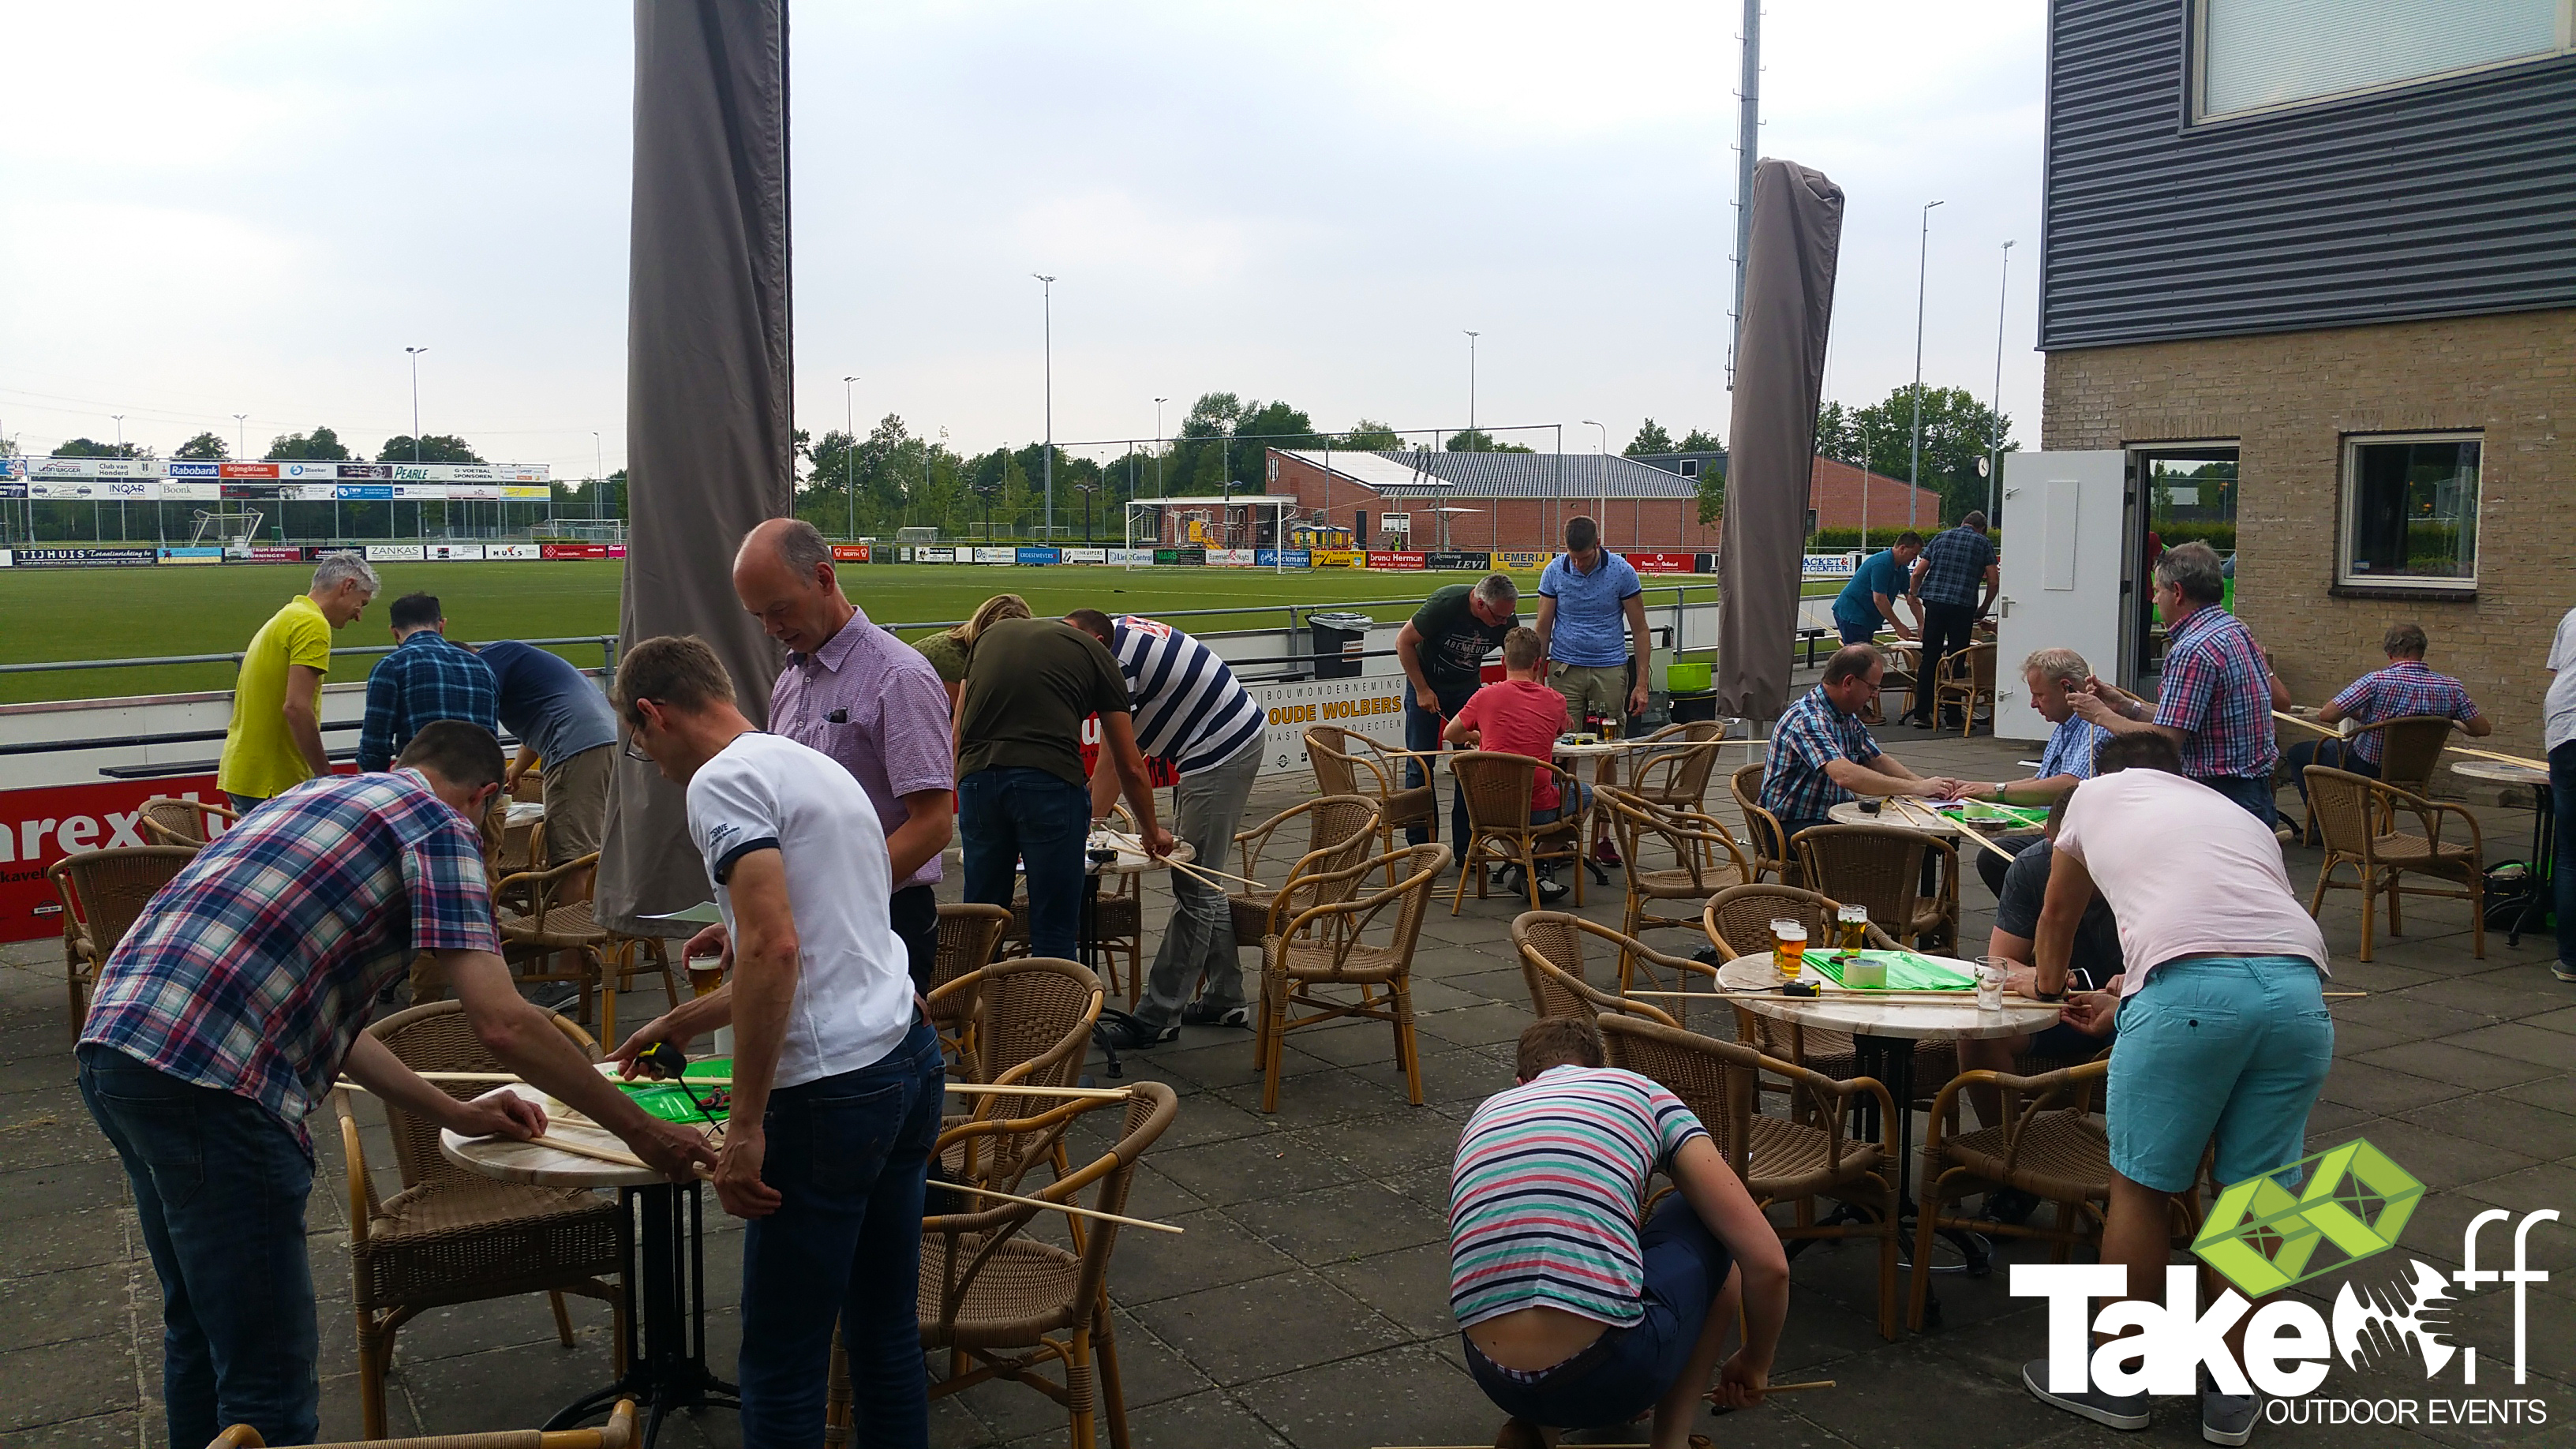 Bedrijfsuitje in Twente, lekker bouwen op het terras aan een gezamenlijke team opdracht.